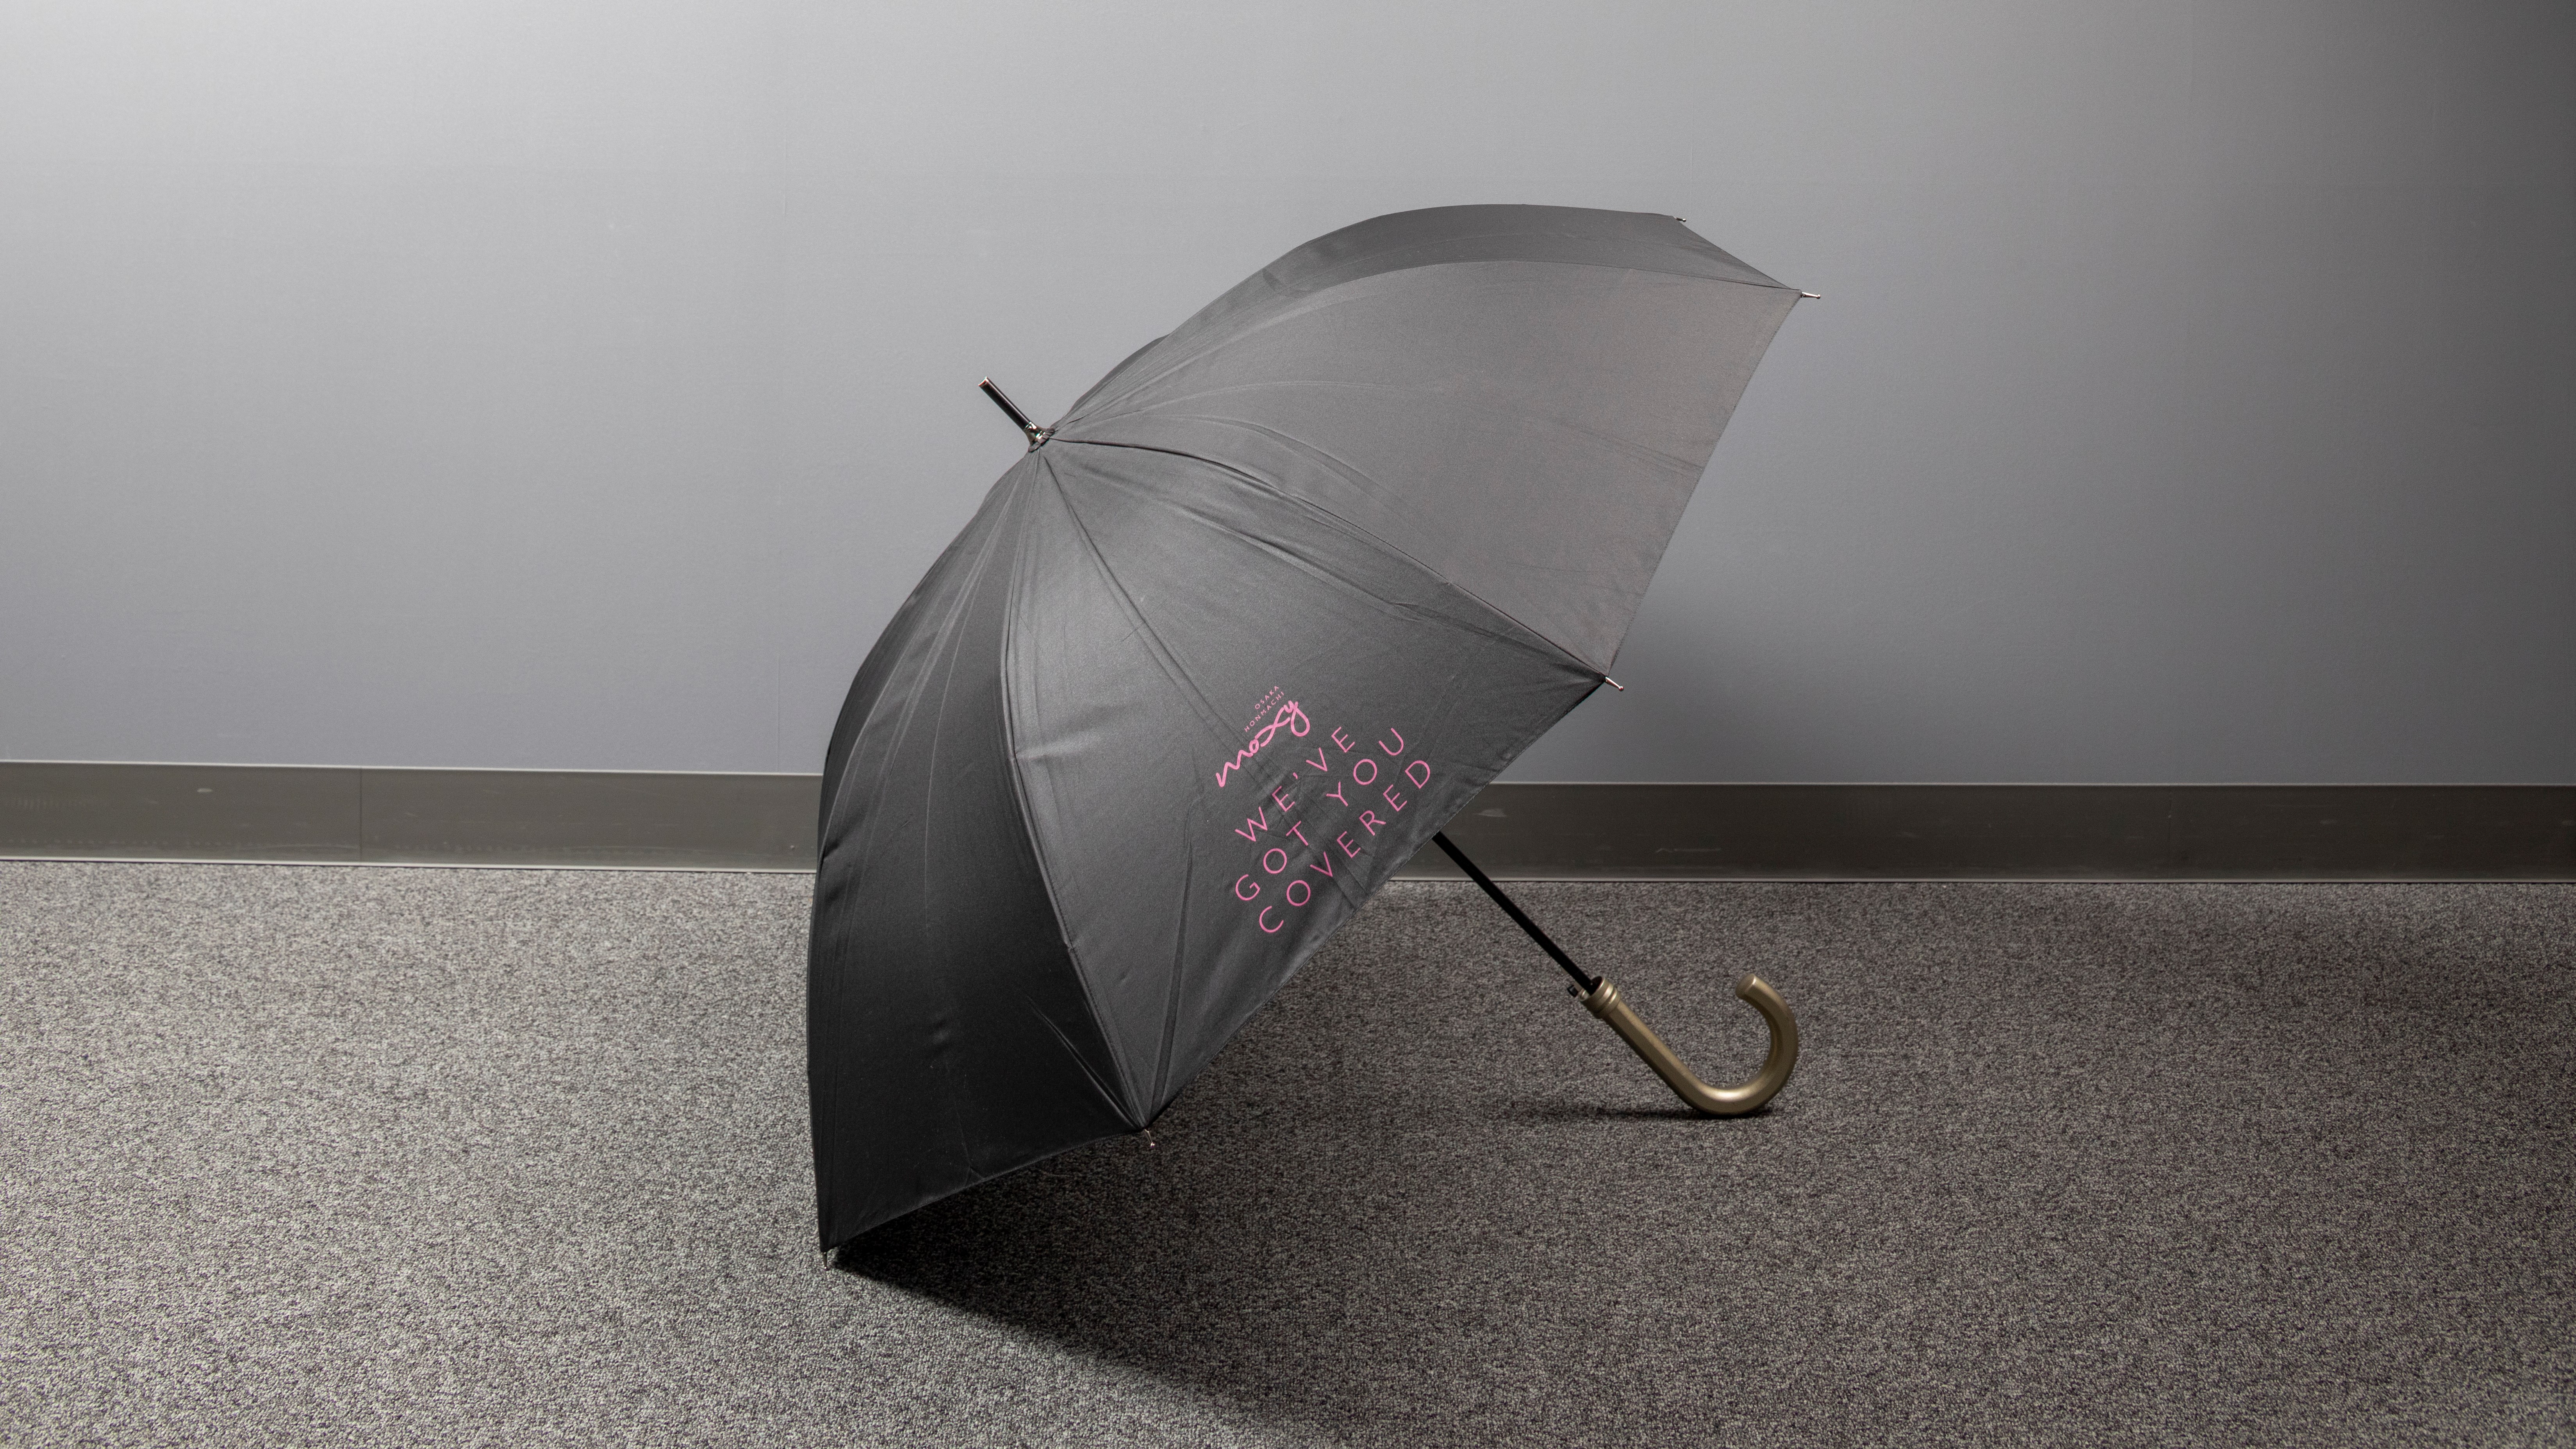  【貸出備品】大きいMOXY傘をフロントにてご用意！